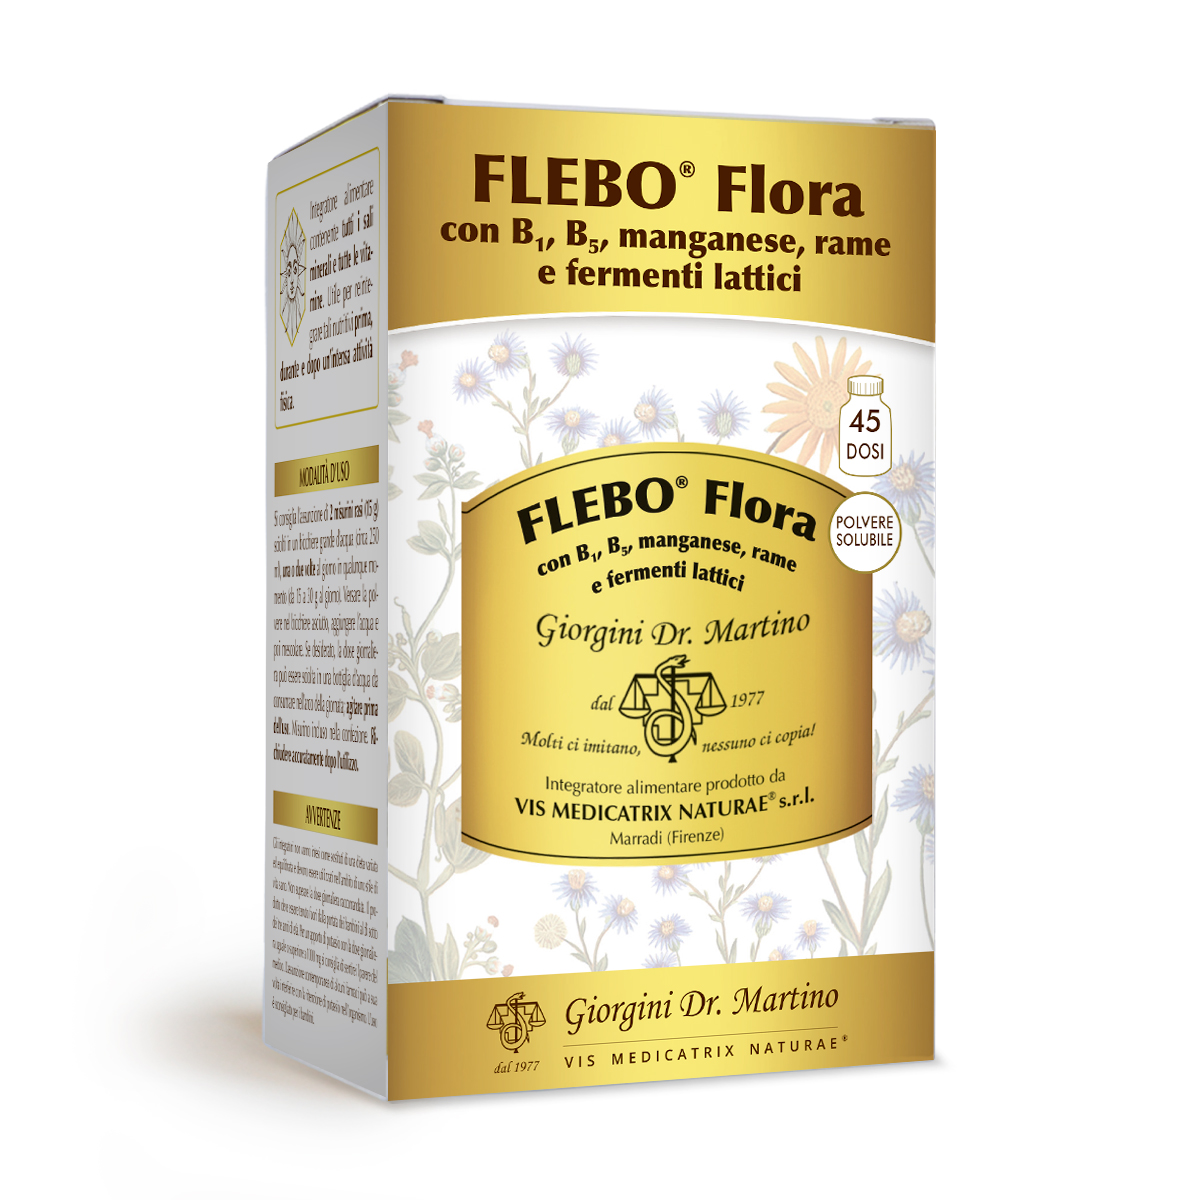 FLEBO FLORA polvere solubile 360 g